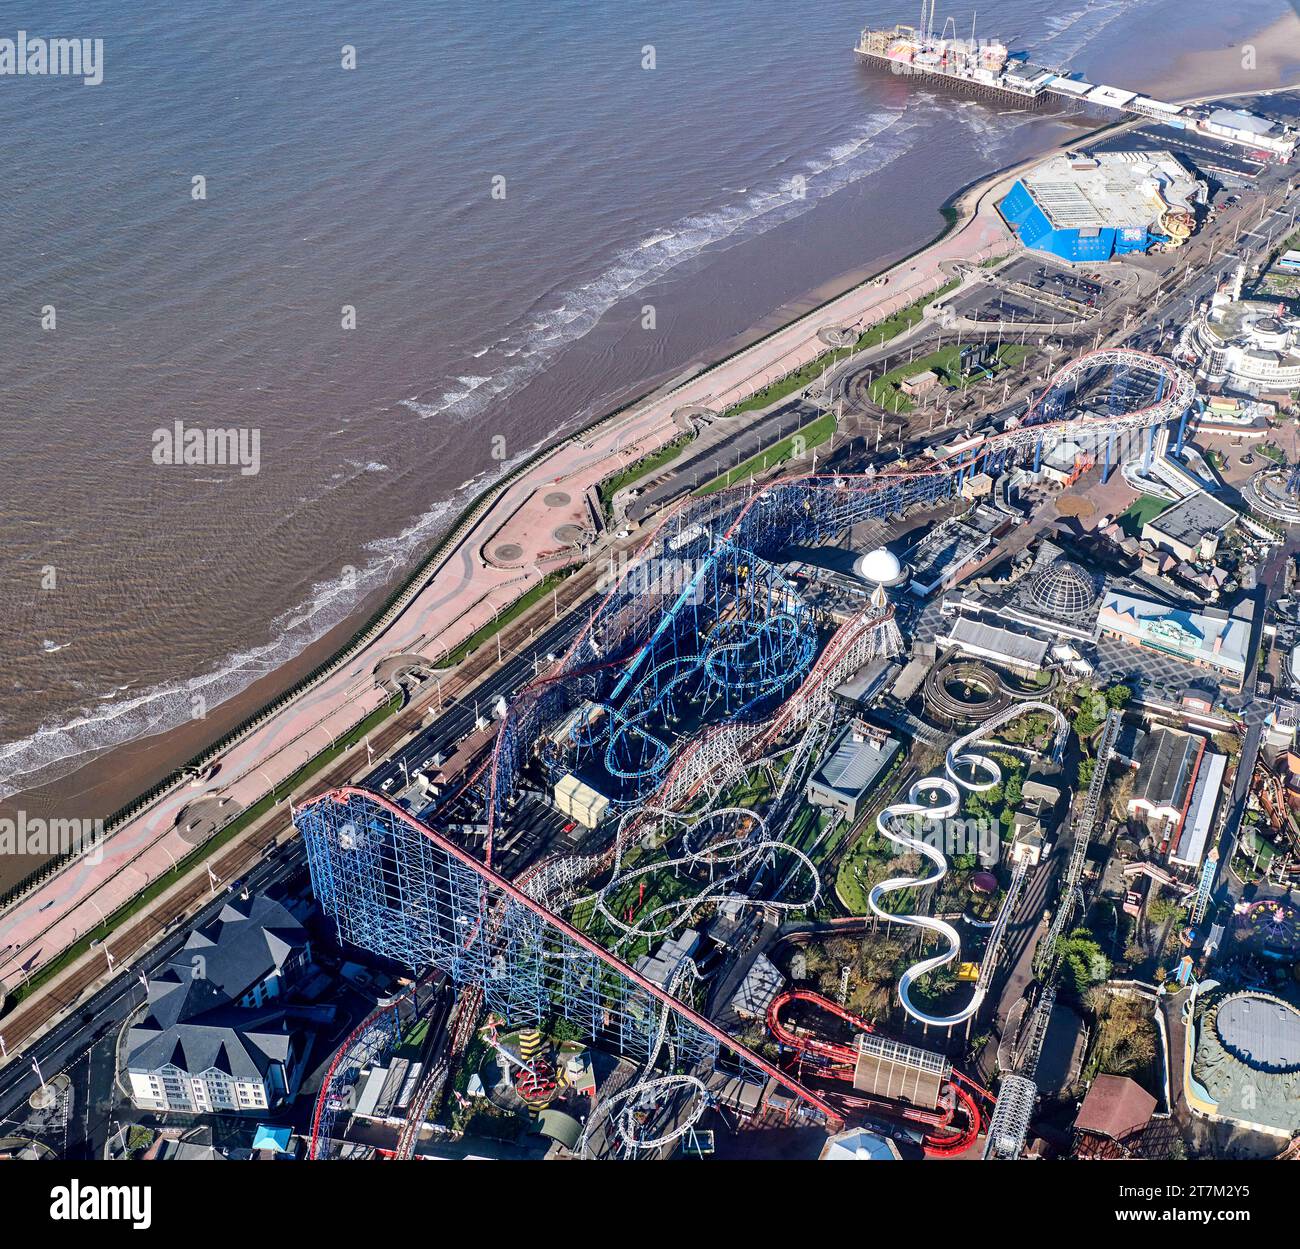 Una foto aerea del fronte mare e della spiaggia nella località turistica di Blackpool, Inghilterra nord-occidentale, Regno Unito e la fiera e giostre Pleasure Beach Foto Stock